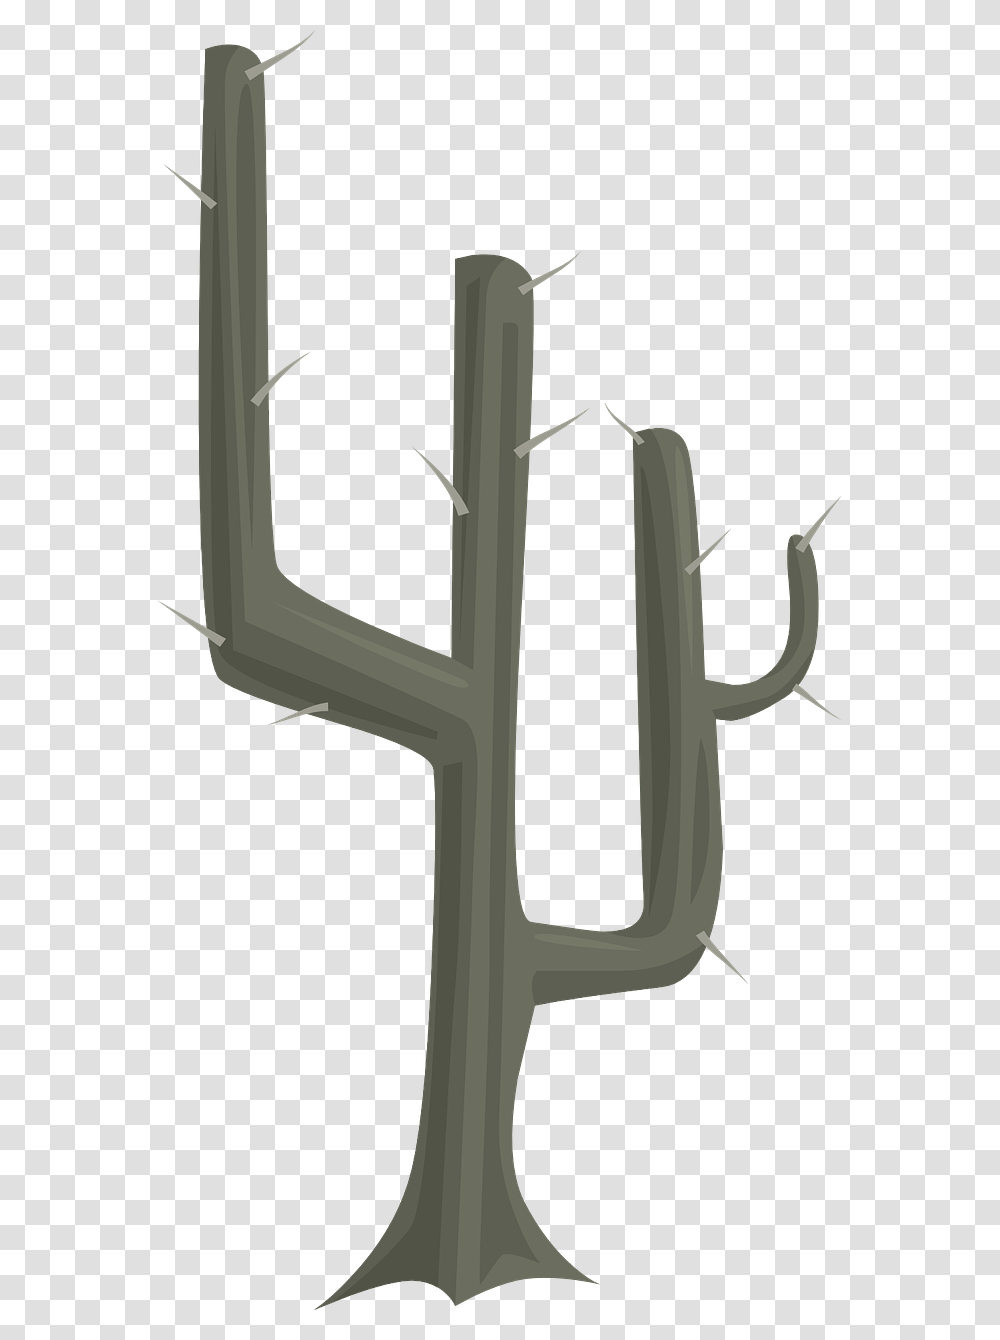 Trunk Cactus Clipart Explore Pictures, Cross, Plant, Weapon Transparent Png